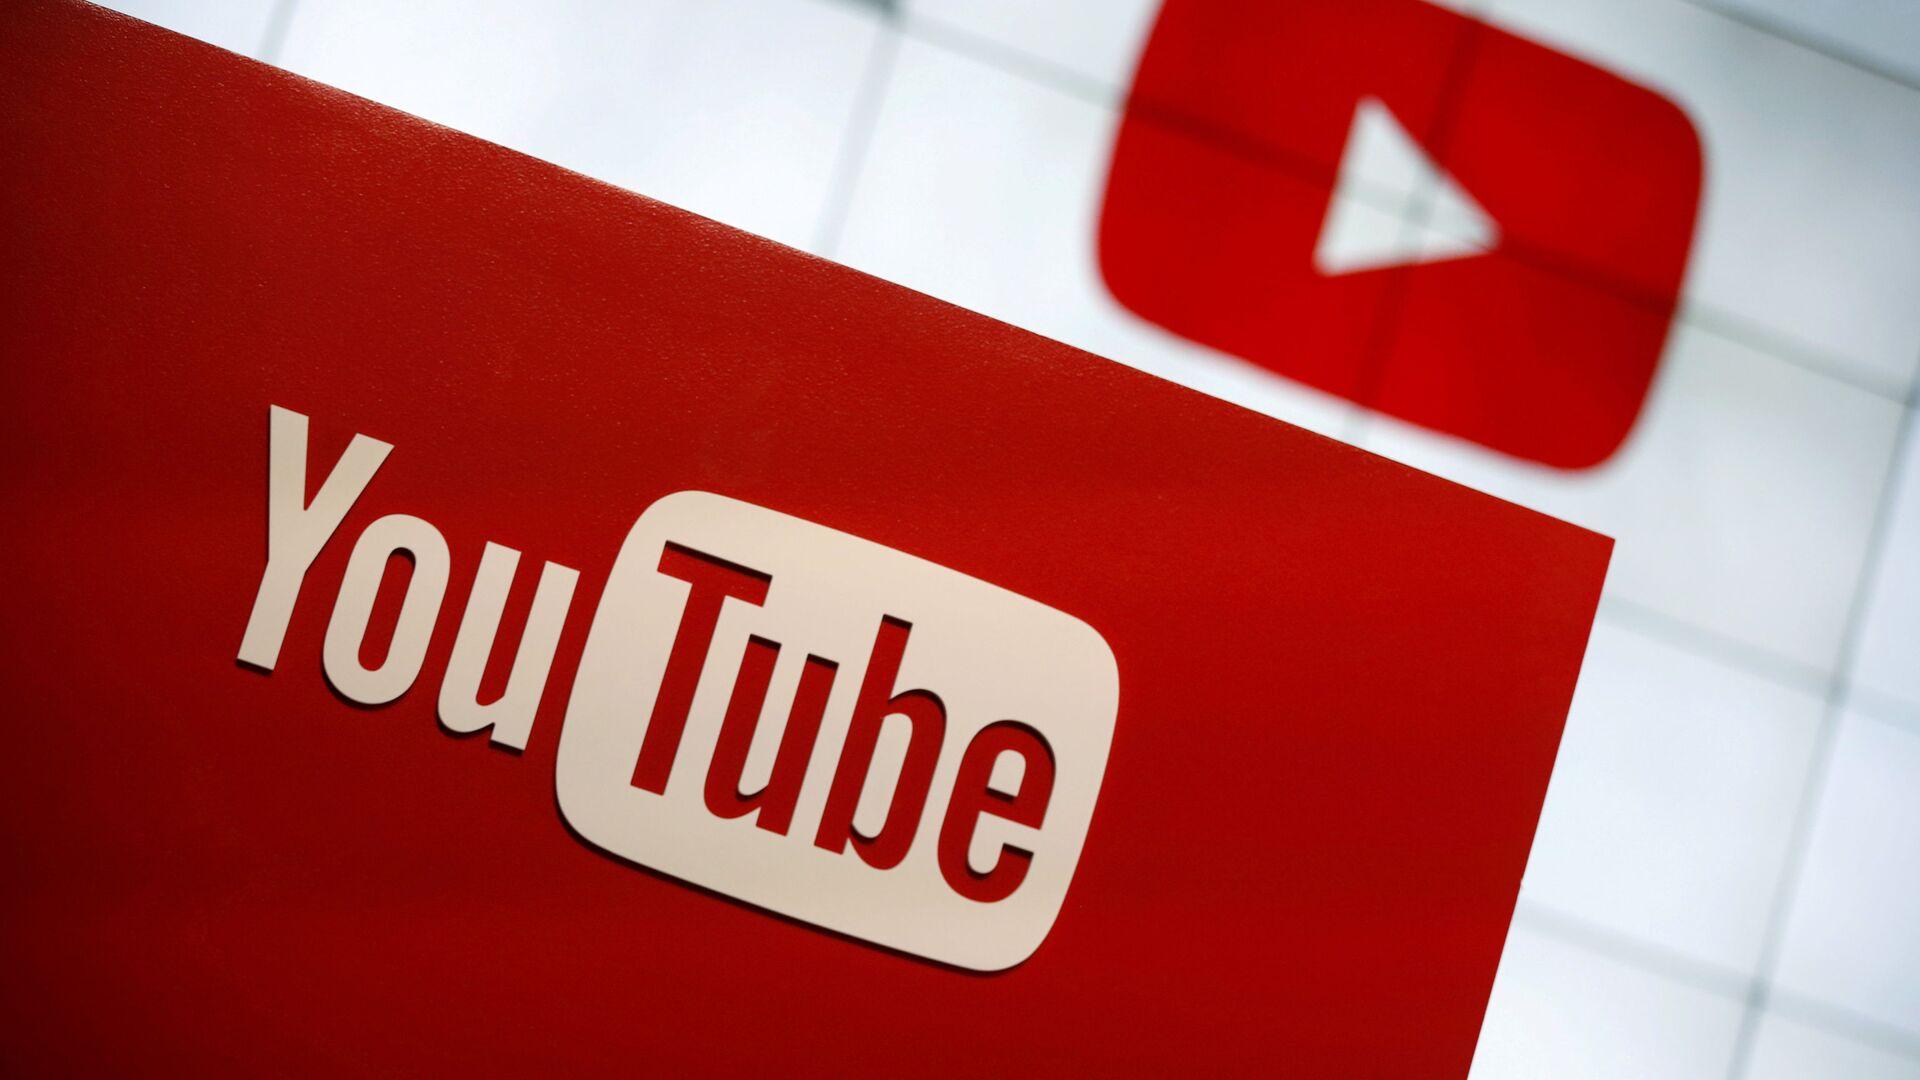 يوتيوب توضح حقيقة خسارة الفنانين لملايين المشاهدات